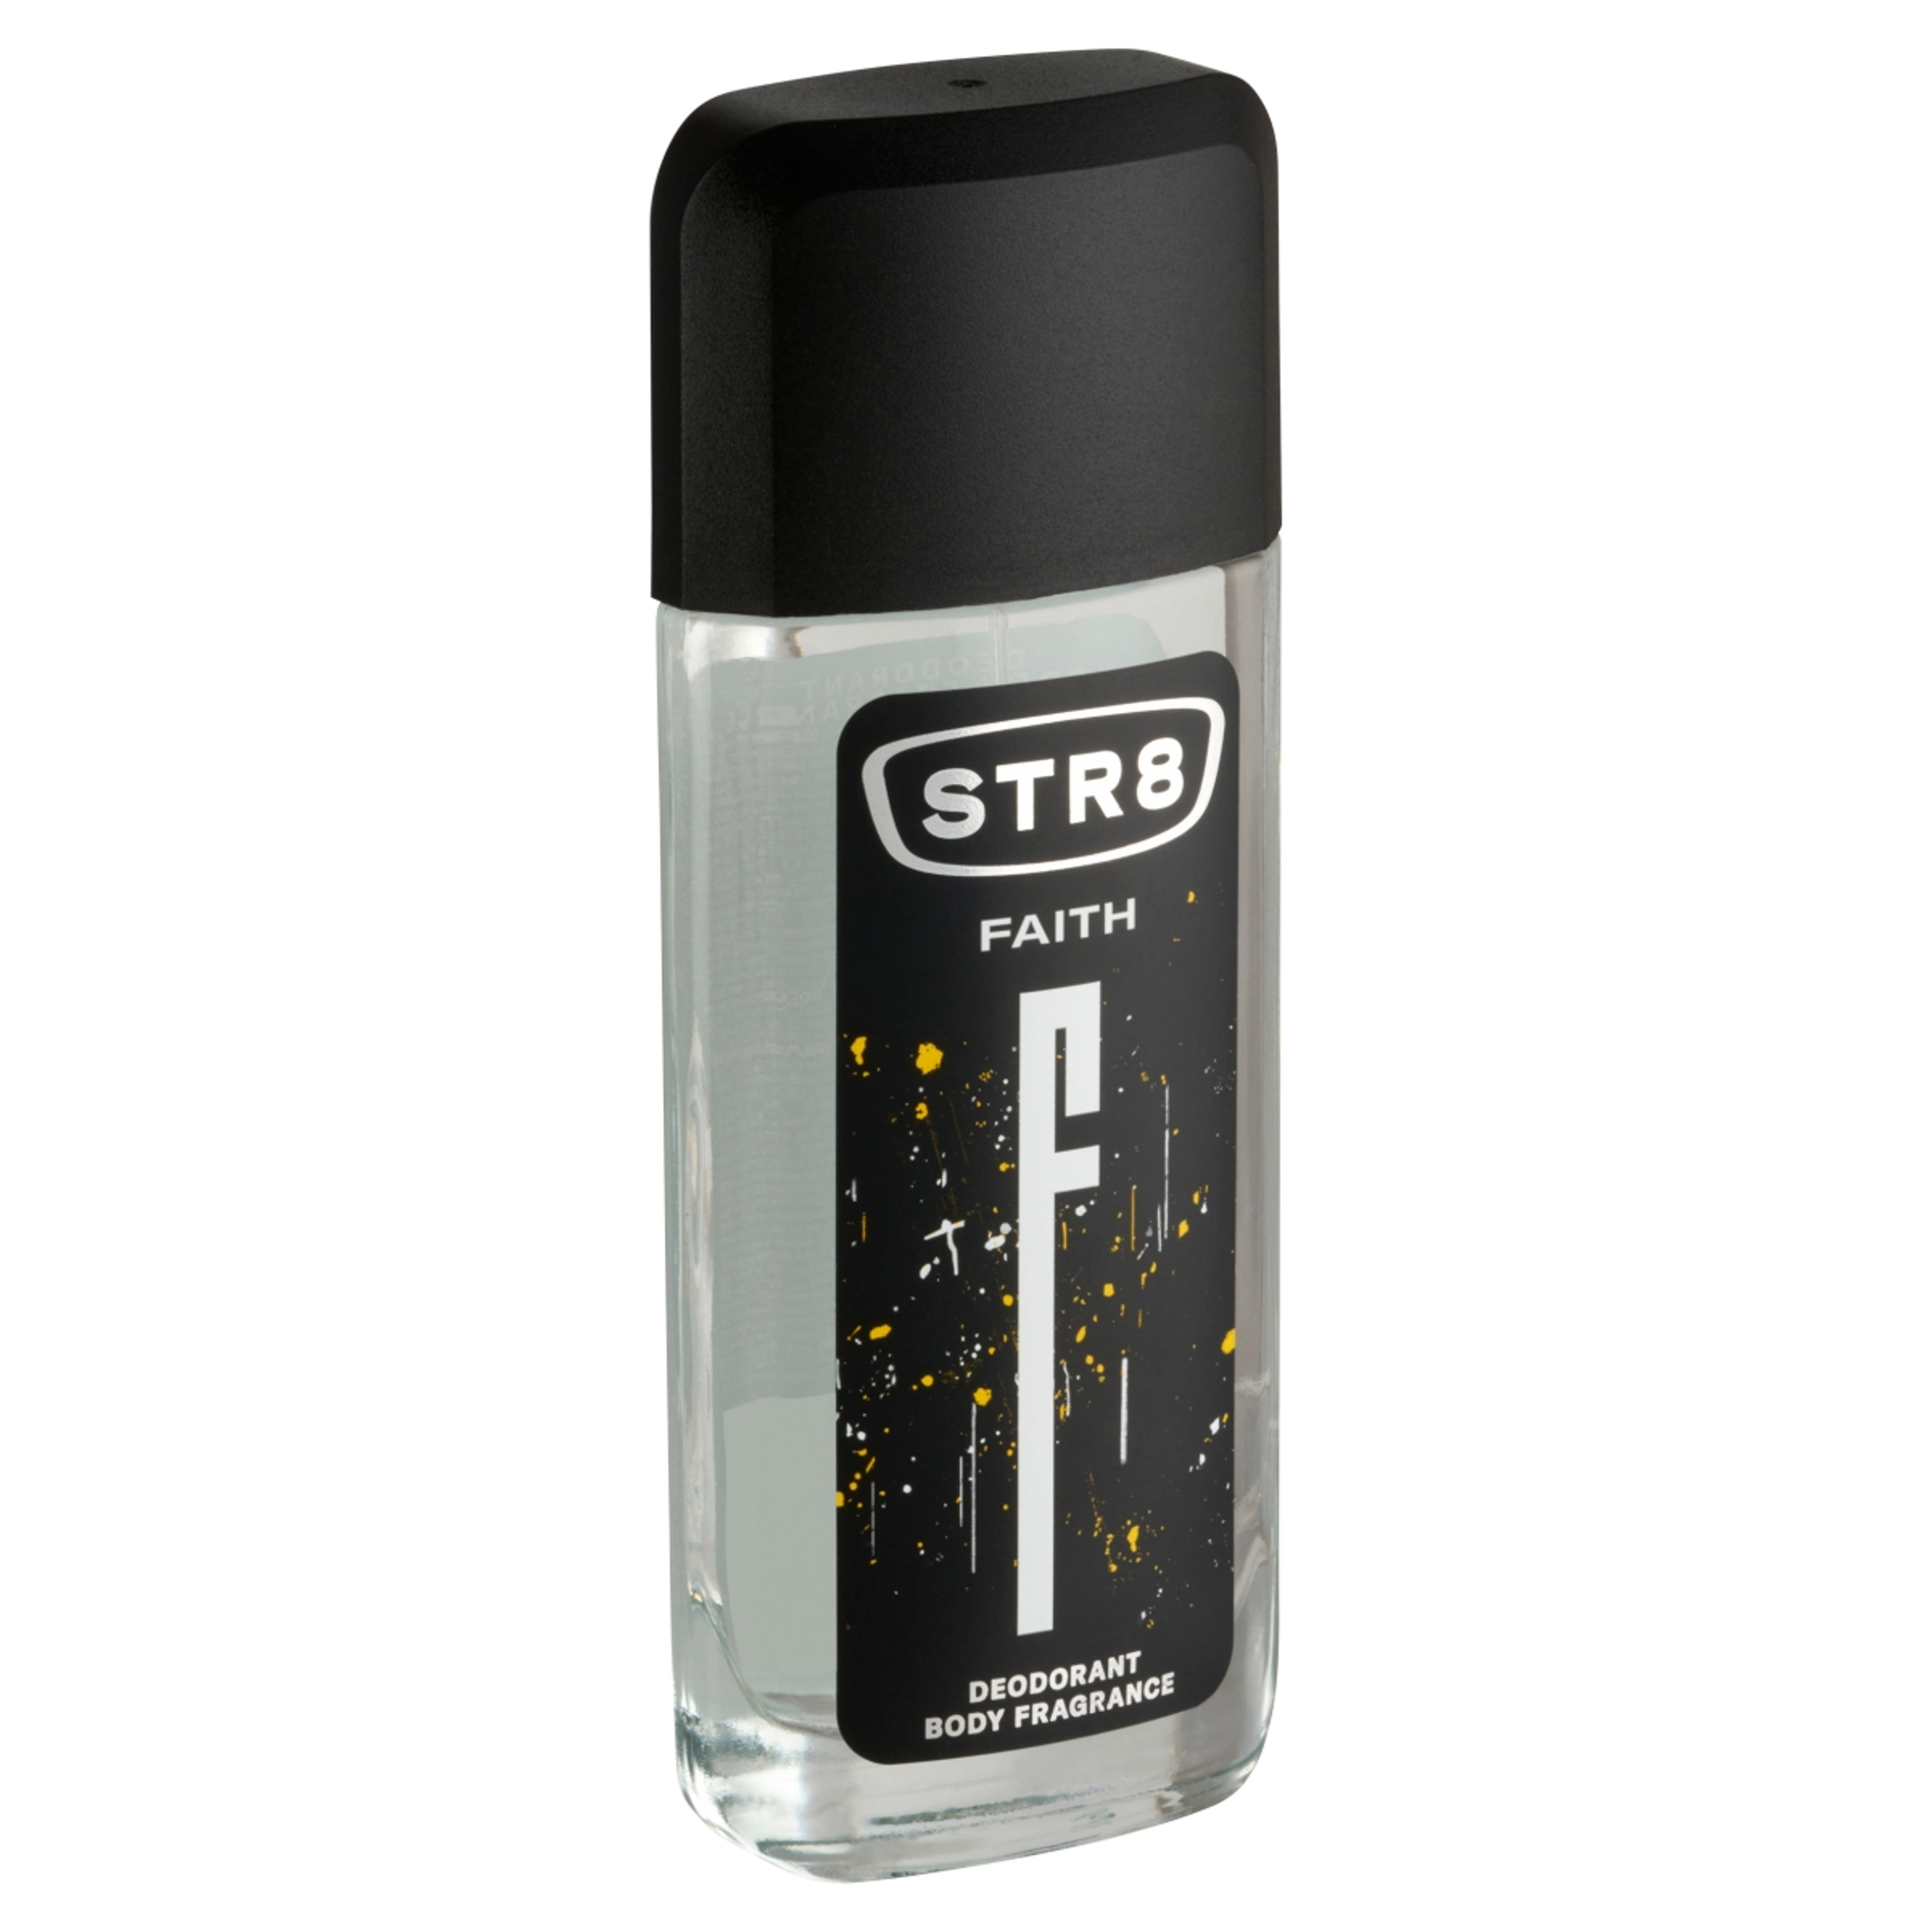 STR8 Faith Body Fragrance parfüm-spray  - 85 ml-3